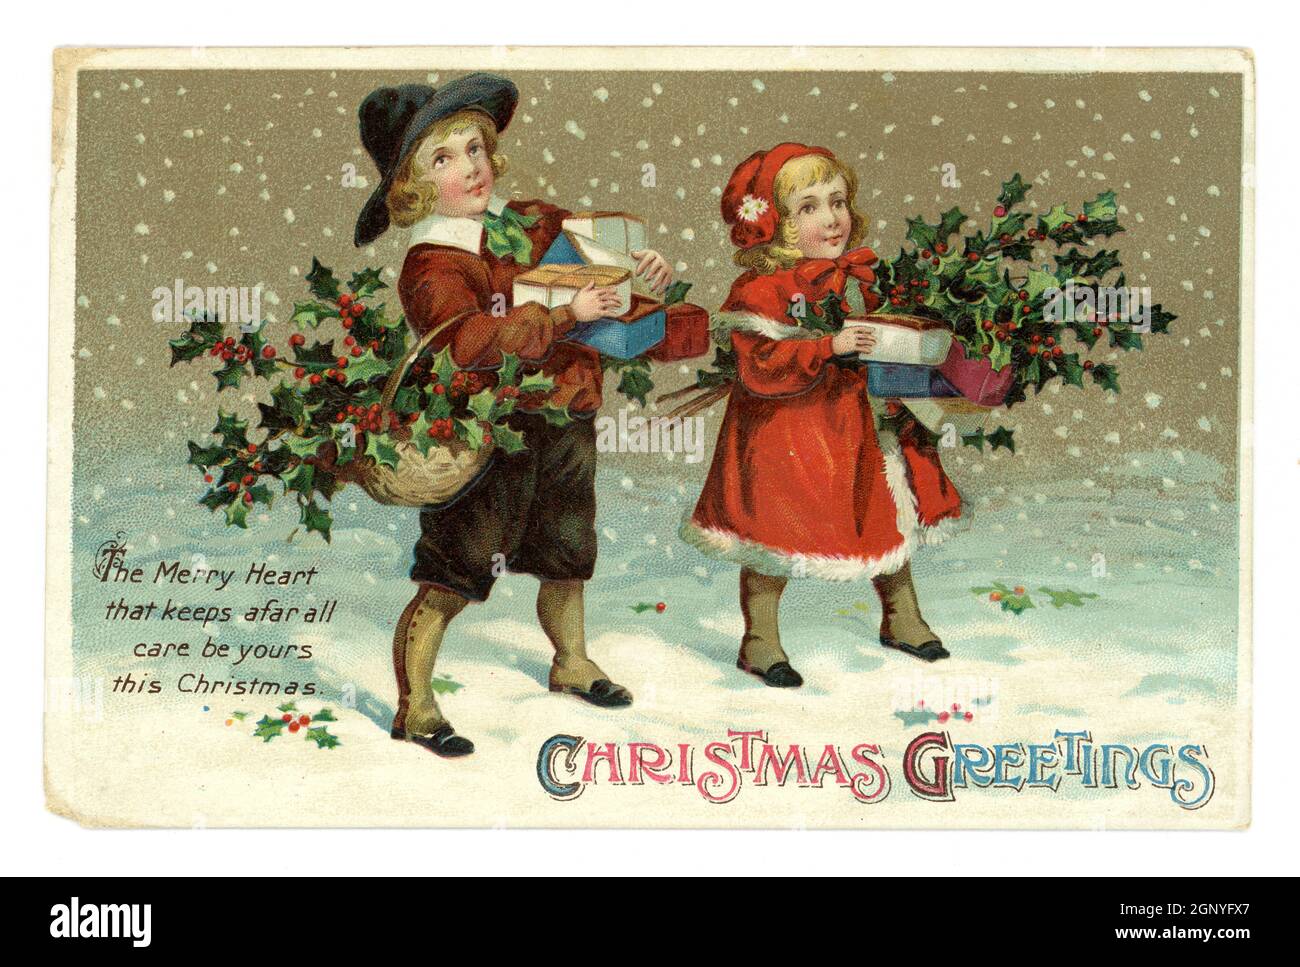 Original en relieve Edwardian era Navidad saludos postal de niños pequeños lindos con ropa de invierno, llevar regalos y acebo, escena nevada, publicado por International Art Publishing Co. Ltd. Impreso en Alemania alrededor de 1910 Foto de stock